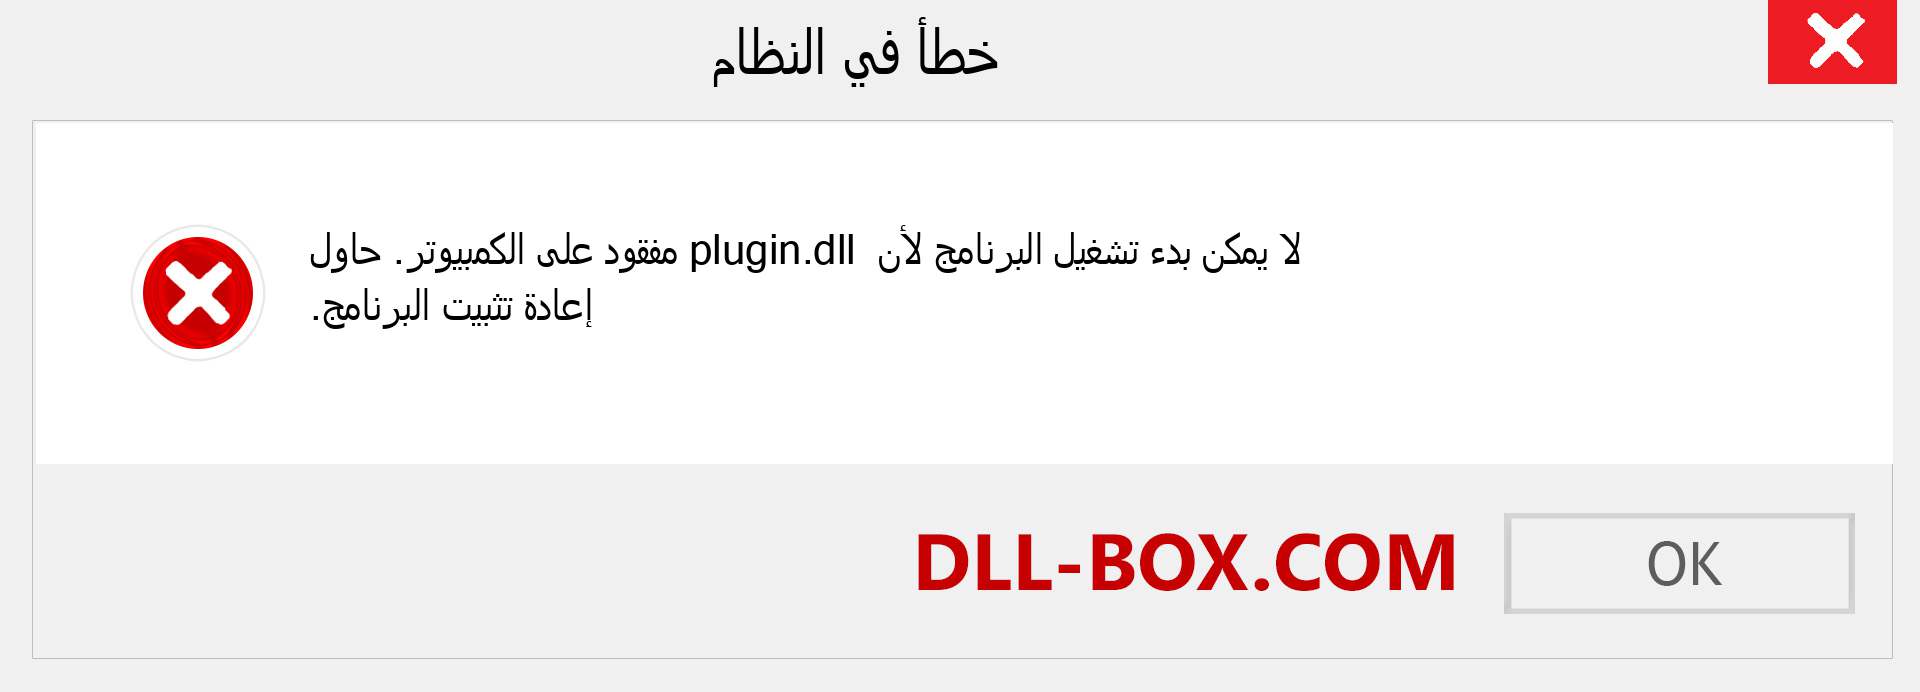 ملف plugin.dll مفقود ؟. التنزيل لنظام التشغيل Windows 7 و 8 و 10 - إصلاح خطأ plugin dll المفقود على Windows والصور والصور